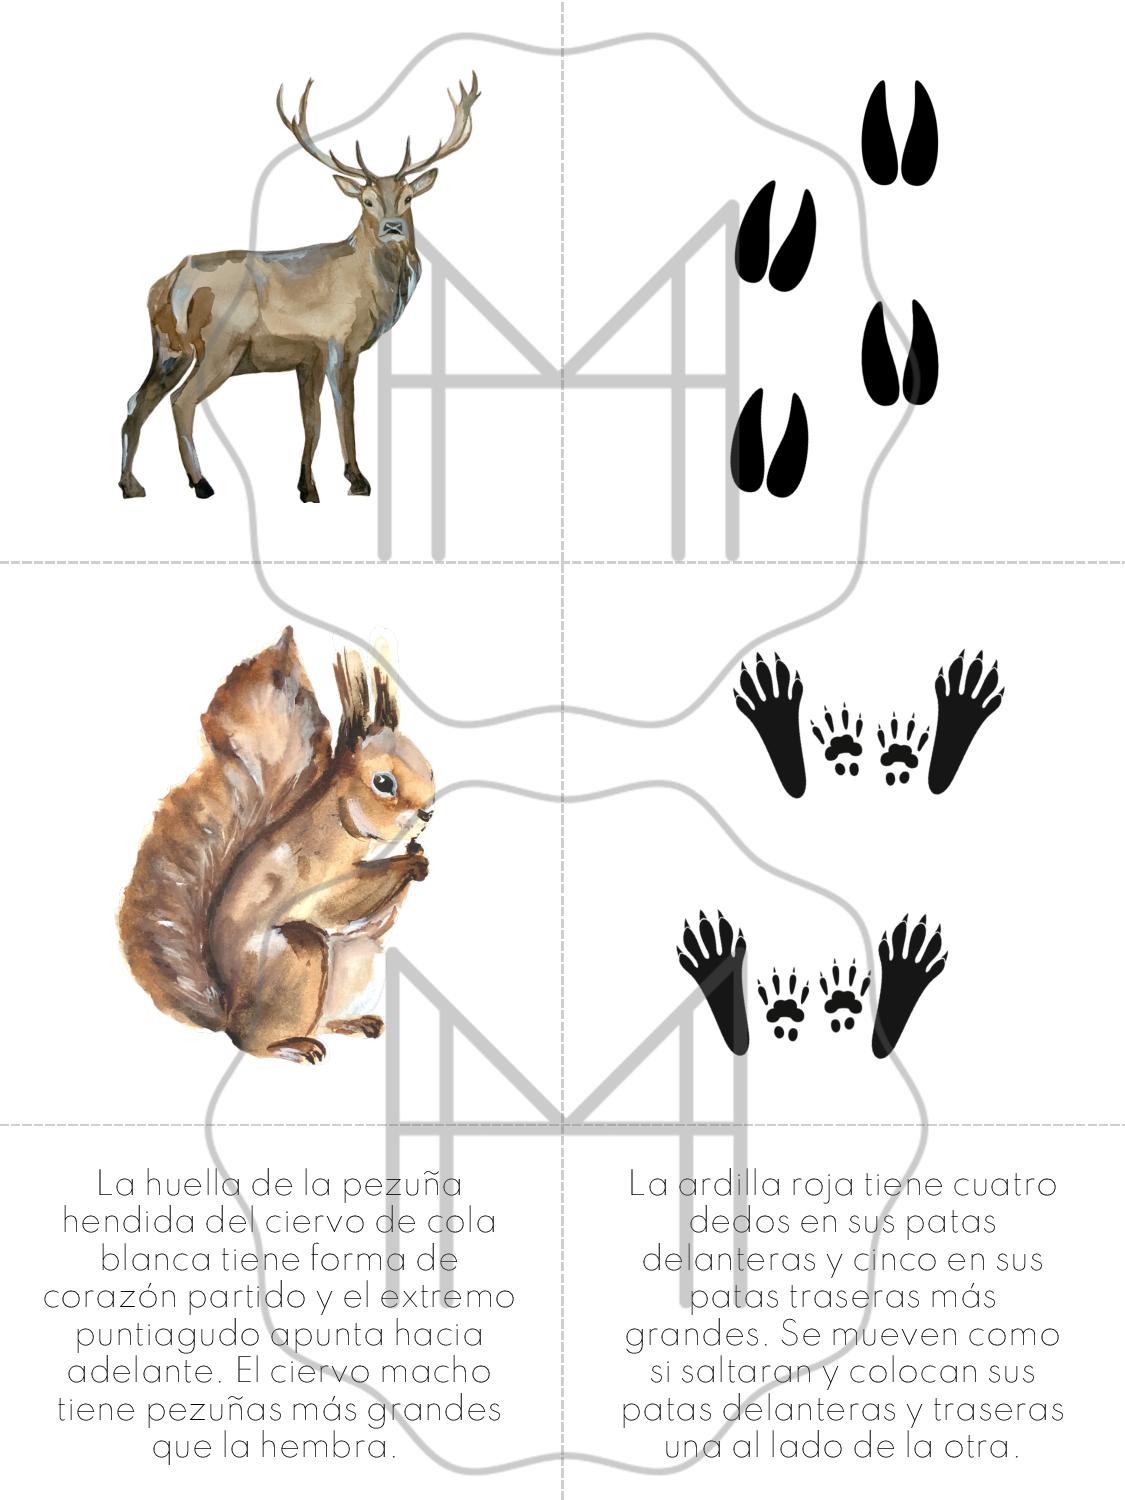 Español - Parejas de huellas de animales - Animales de Norteamérica